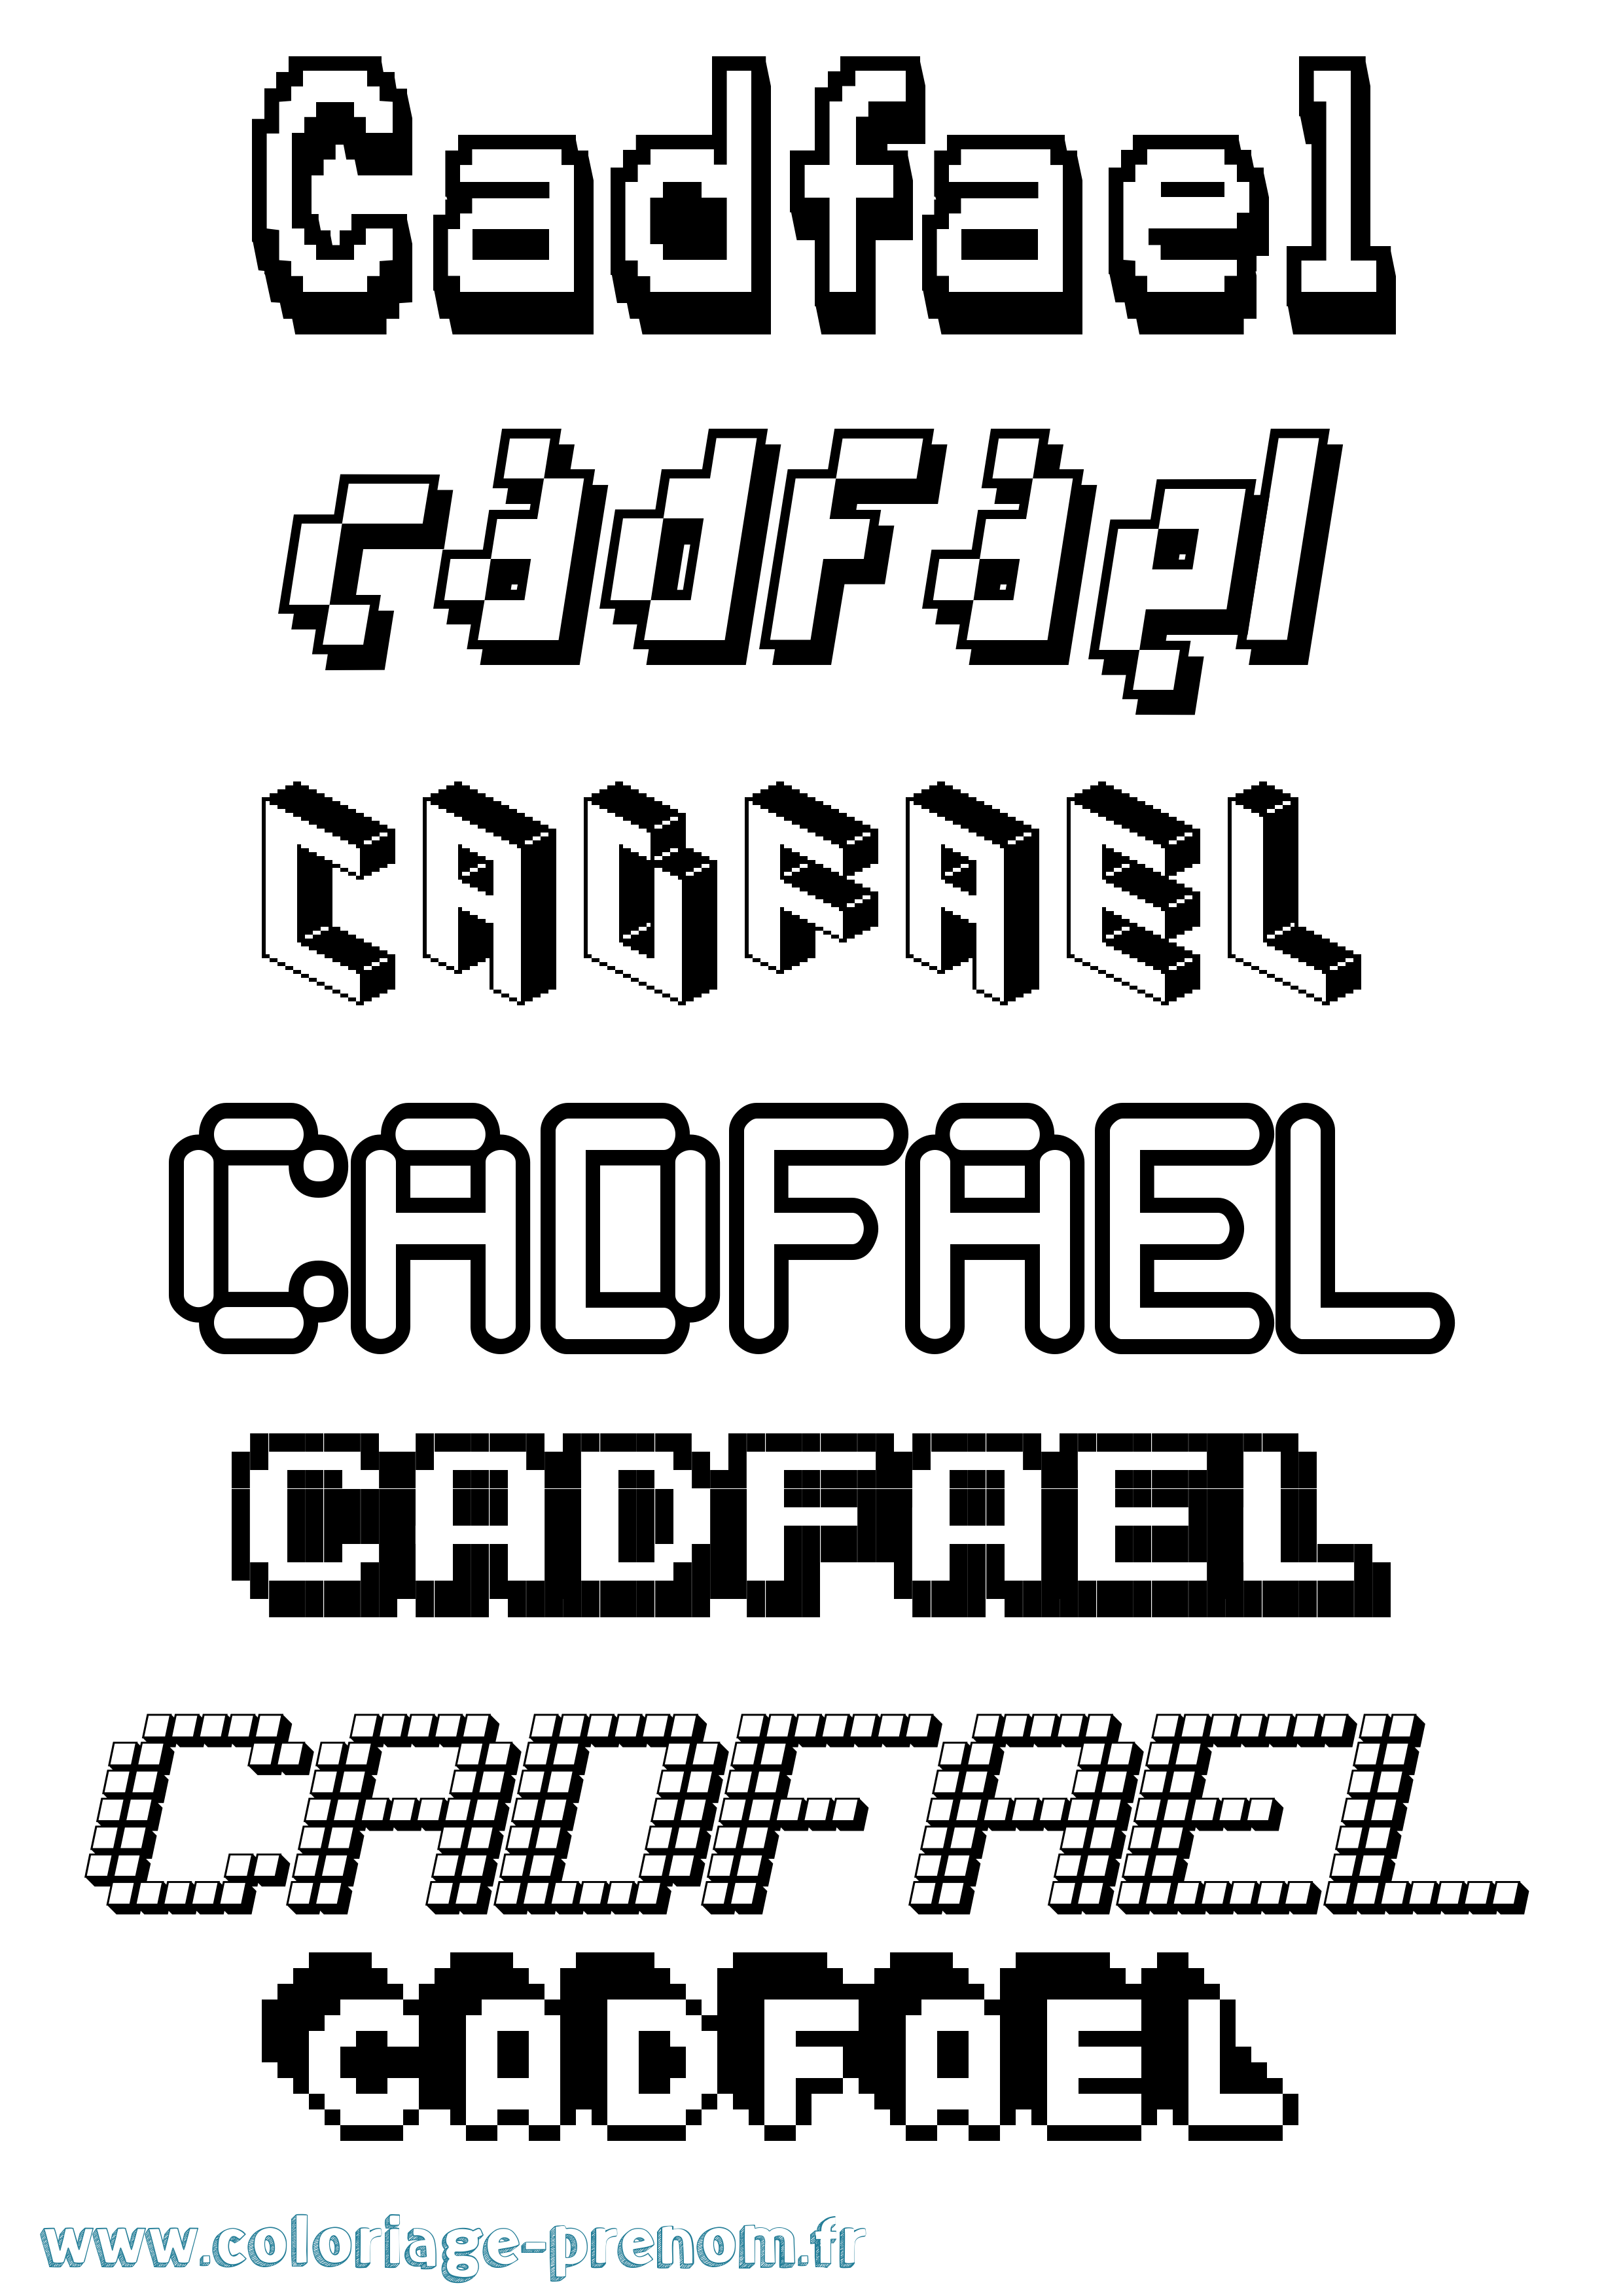 Coloriage prénom Cadfael Pixel